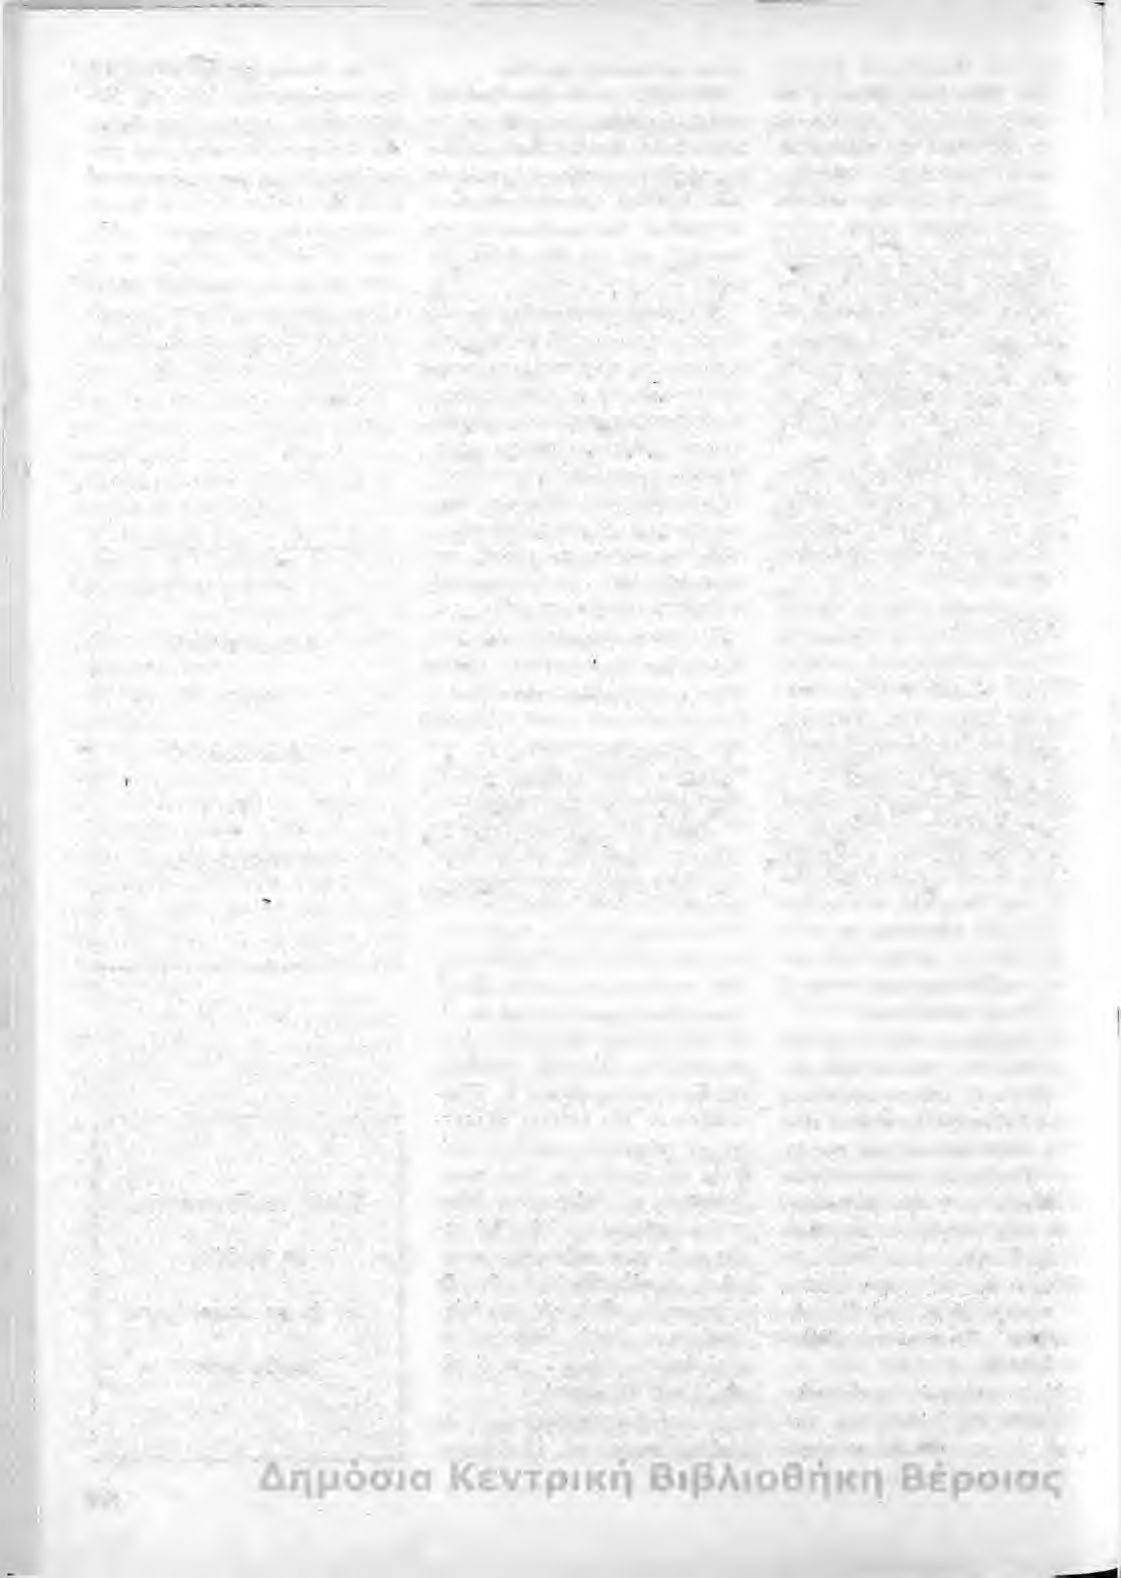 ΕΠΙΣΤΟΛΗ Οι αδελφοί Περδικάρη Χριστόδουλος και Μανωλάκης και η προσφορά τους στον Μακεδονικό αγώνα Φίλε κ. Πρόεδρε, Νάουσα 14.11.1988 Παρακολουθώ το περιοδικό μας και ειλιν.ρ.νά χαίρου;ιαι με την πρόοδό του.